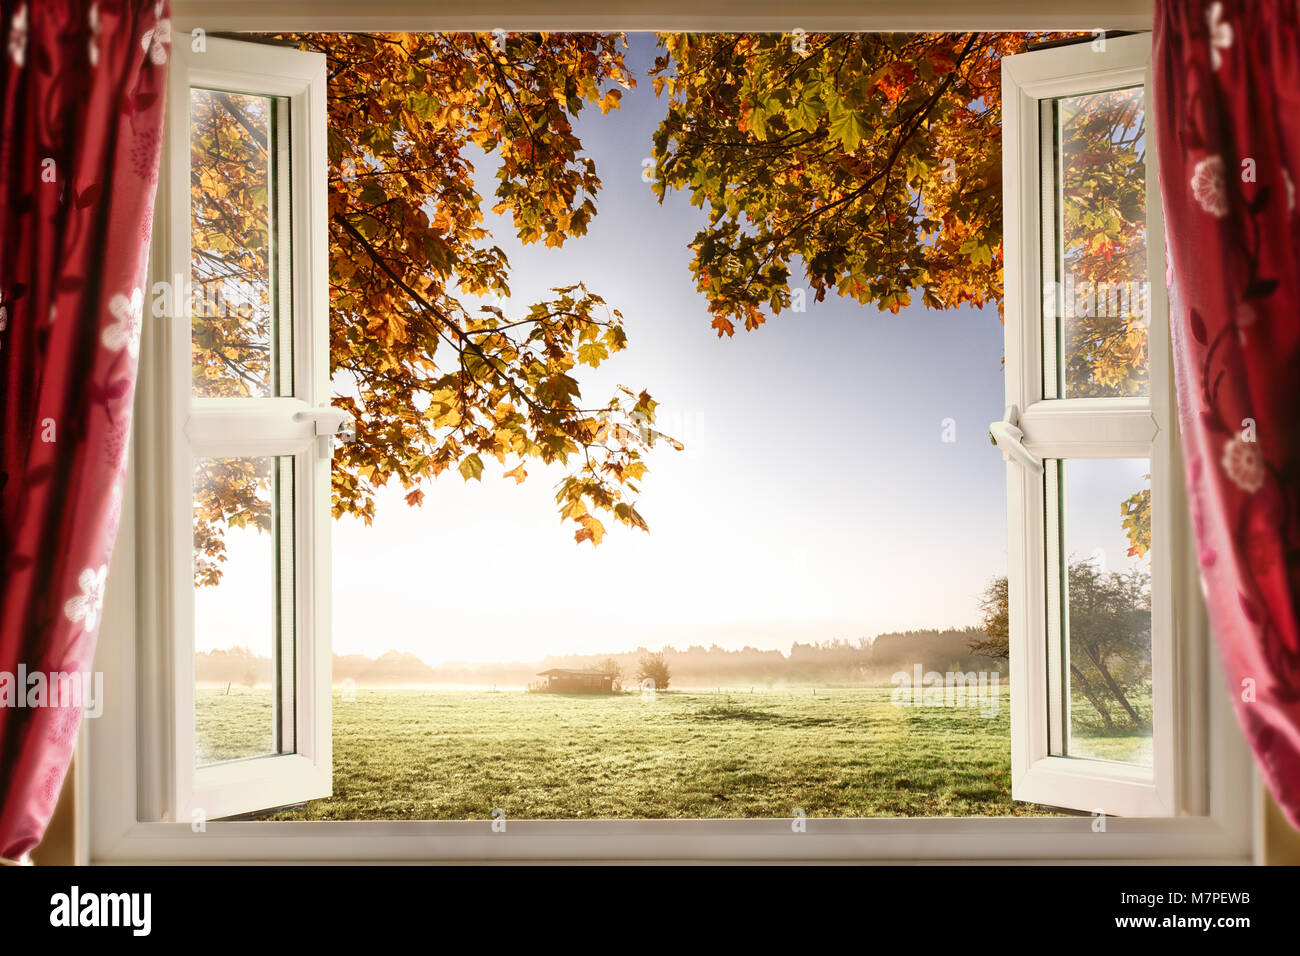 Aprire la finestra con aria fresca e uno scenario paesaggistico viste. Tende rosse aperto visualizza una finestra moderna in una casa in una posizione rurale Foto Stock